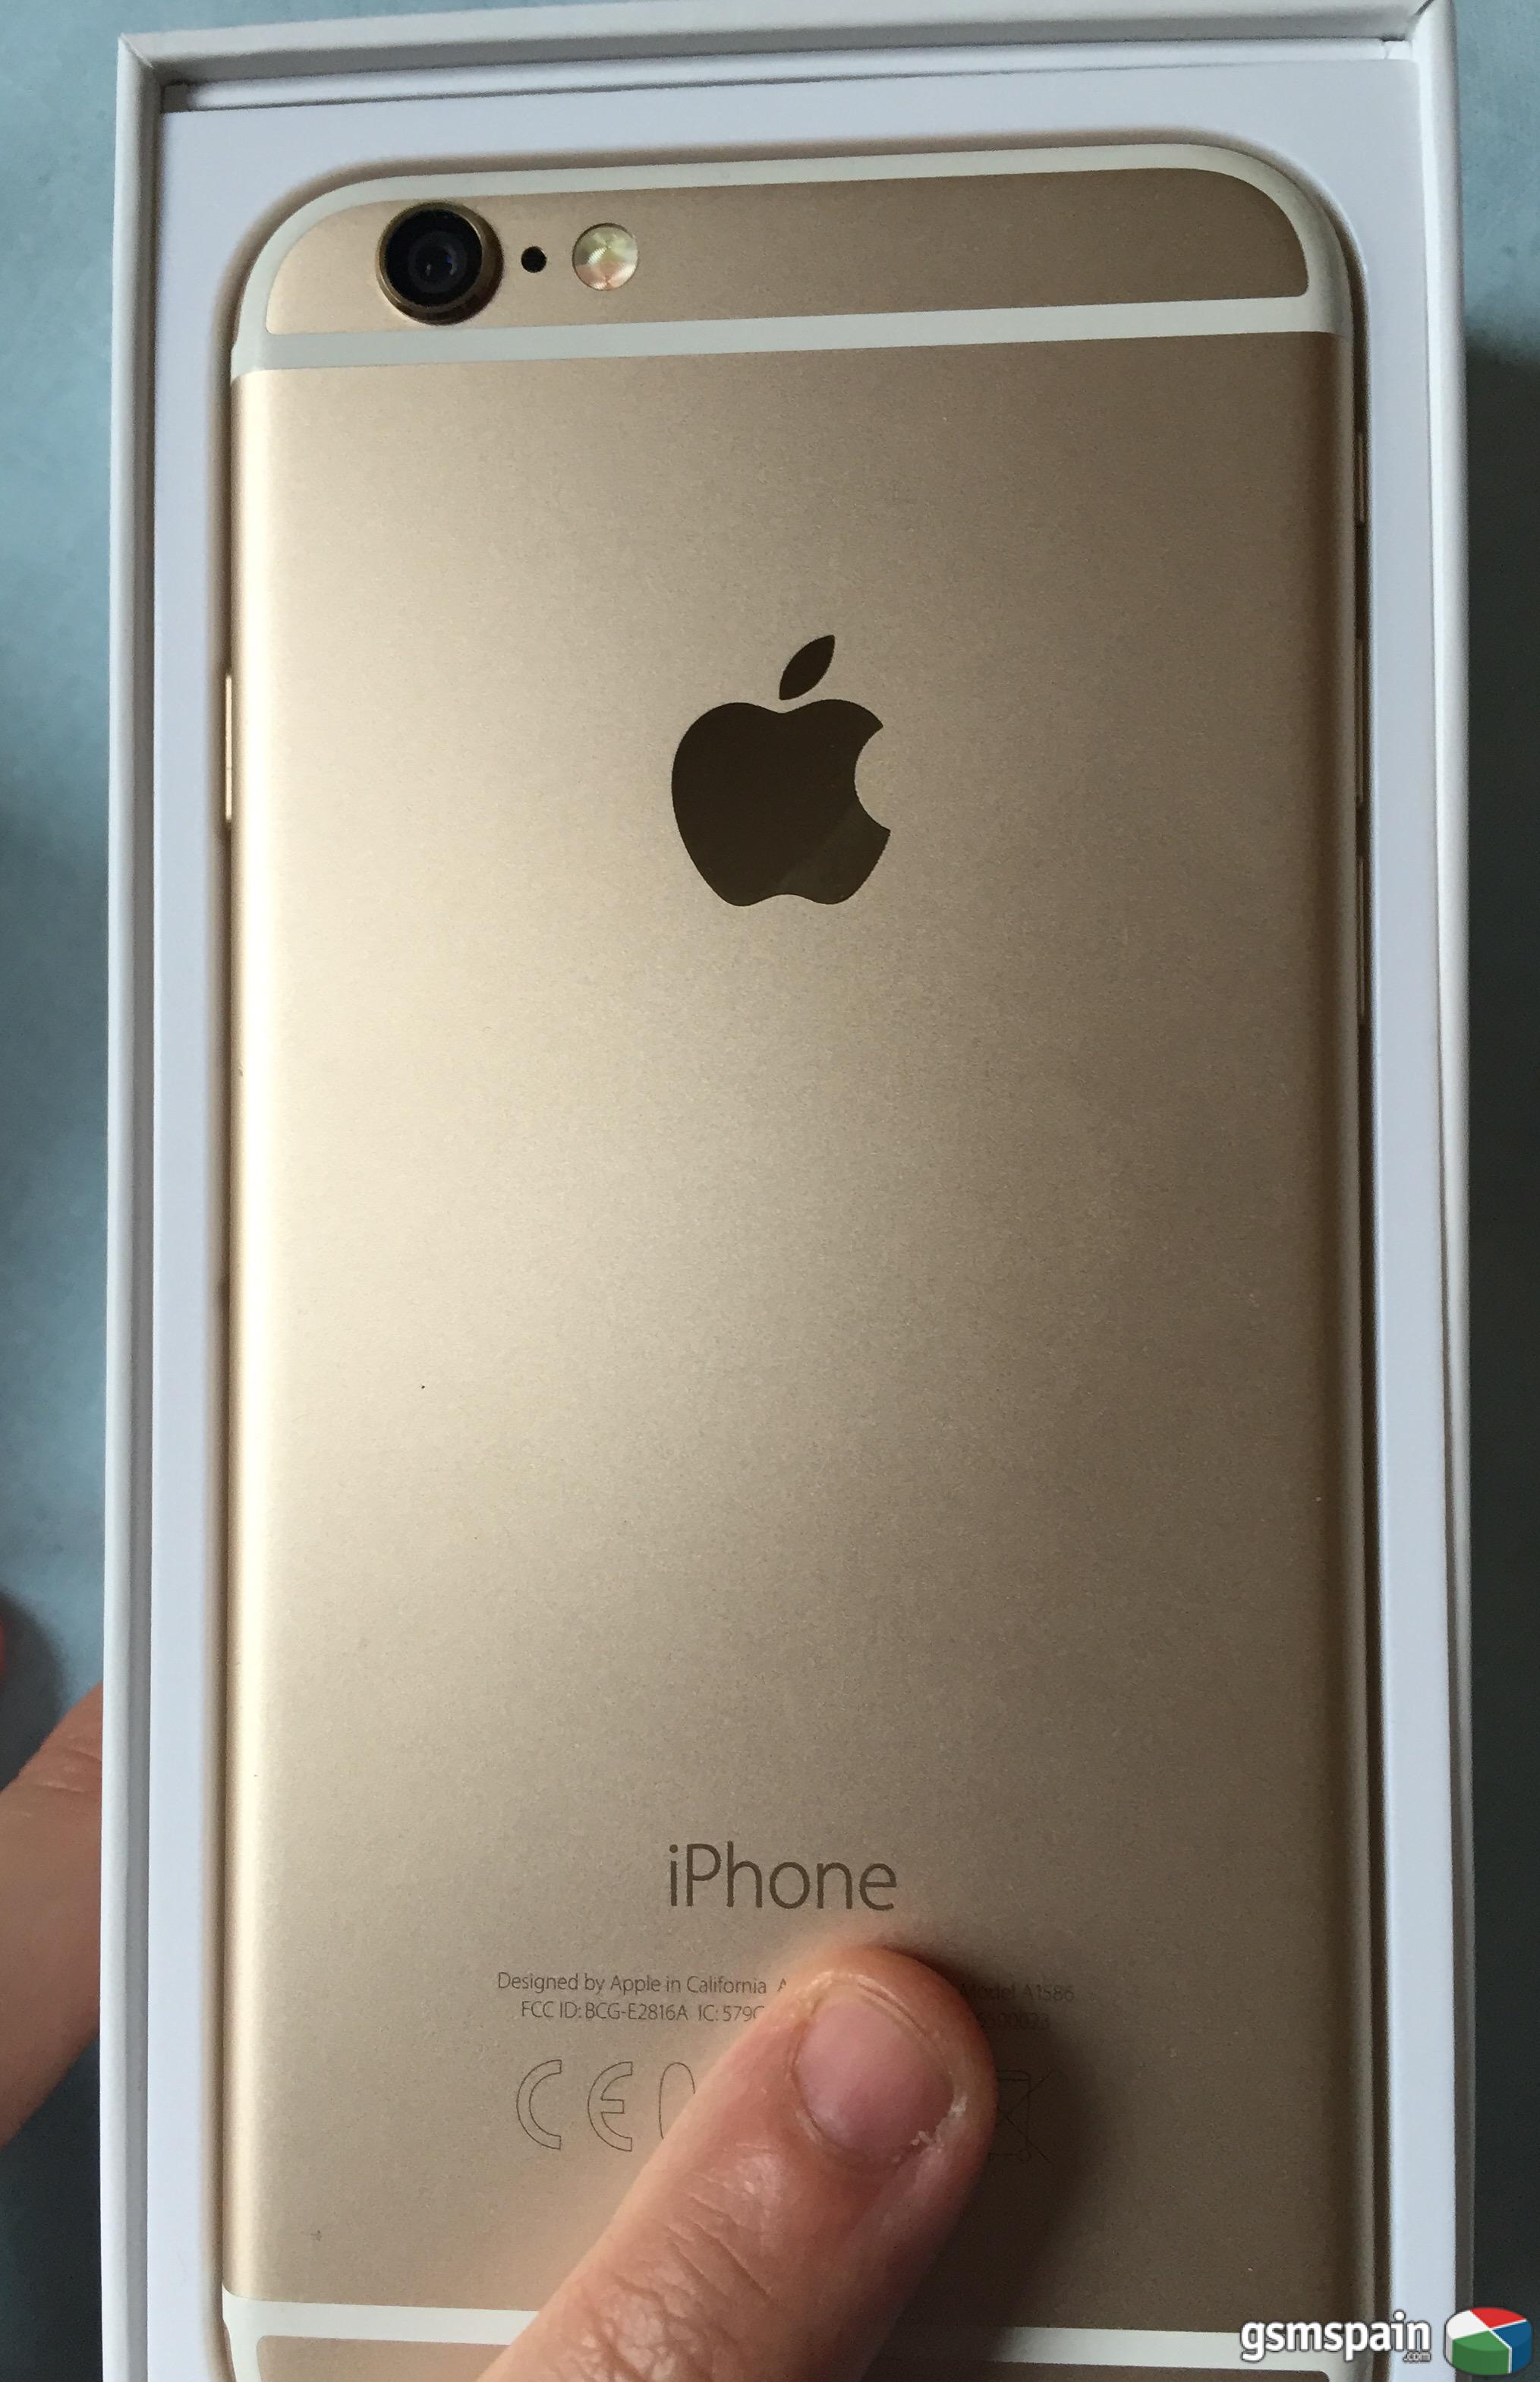 [VENDO] >>> Apple iPhone 6 64gb GOLD, nuevo, caja y accesorios a estrenar <<<